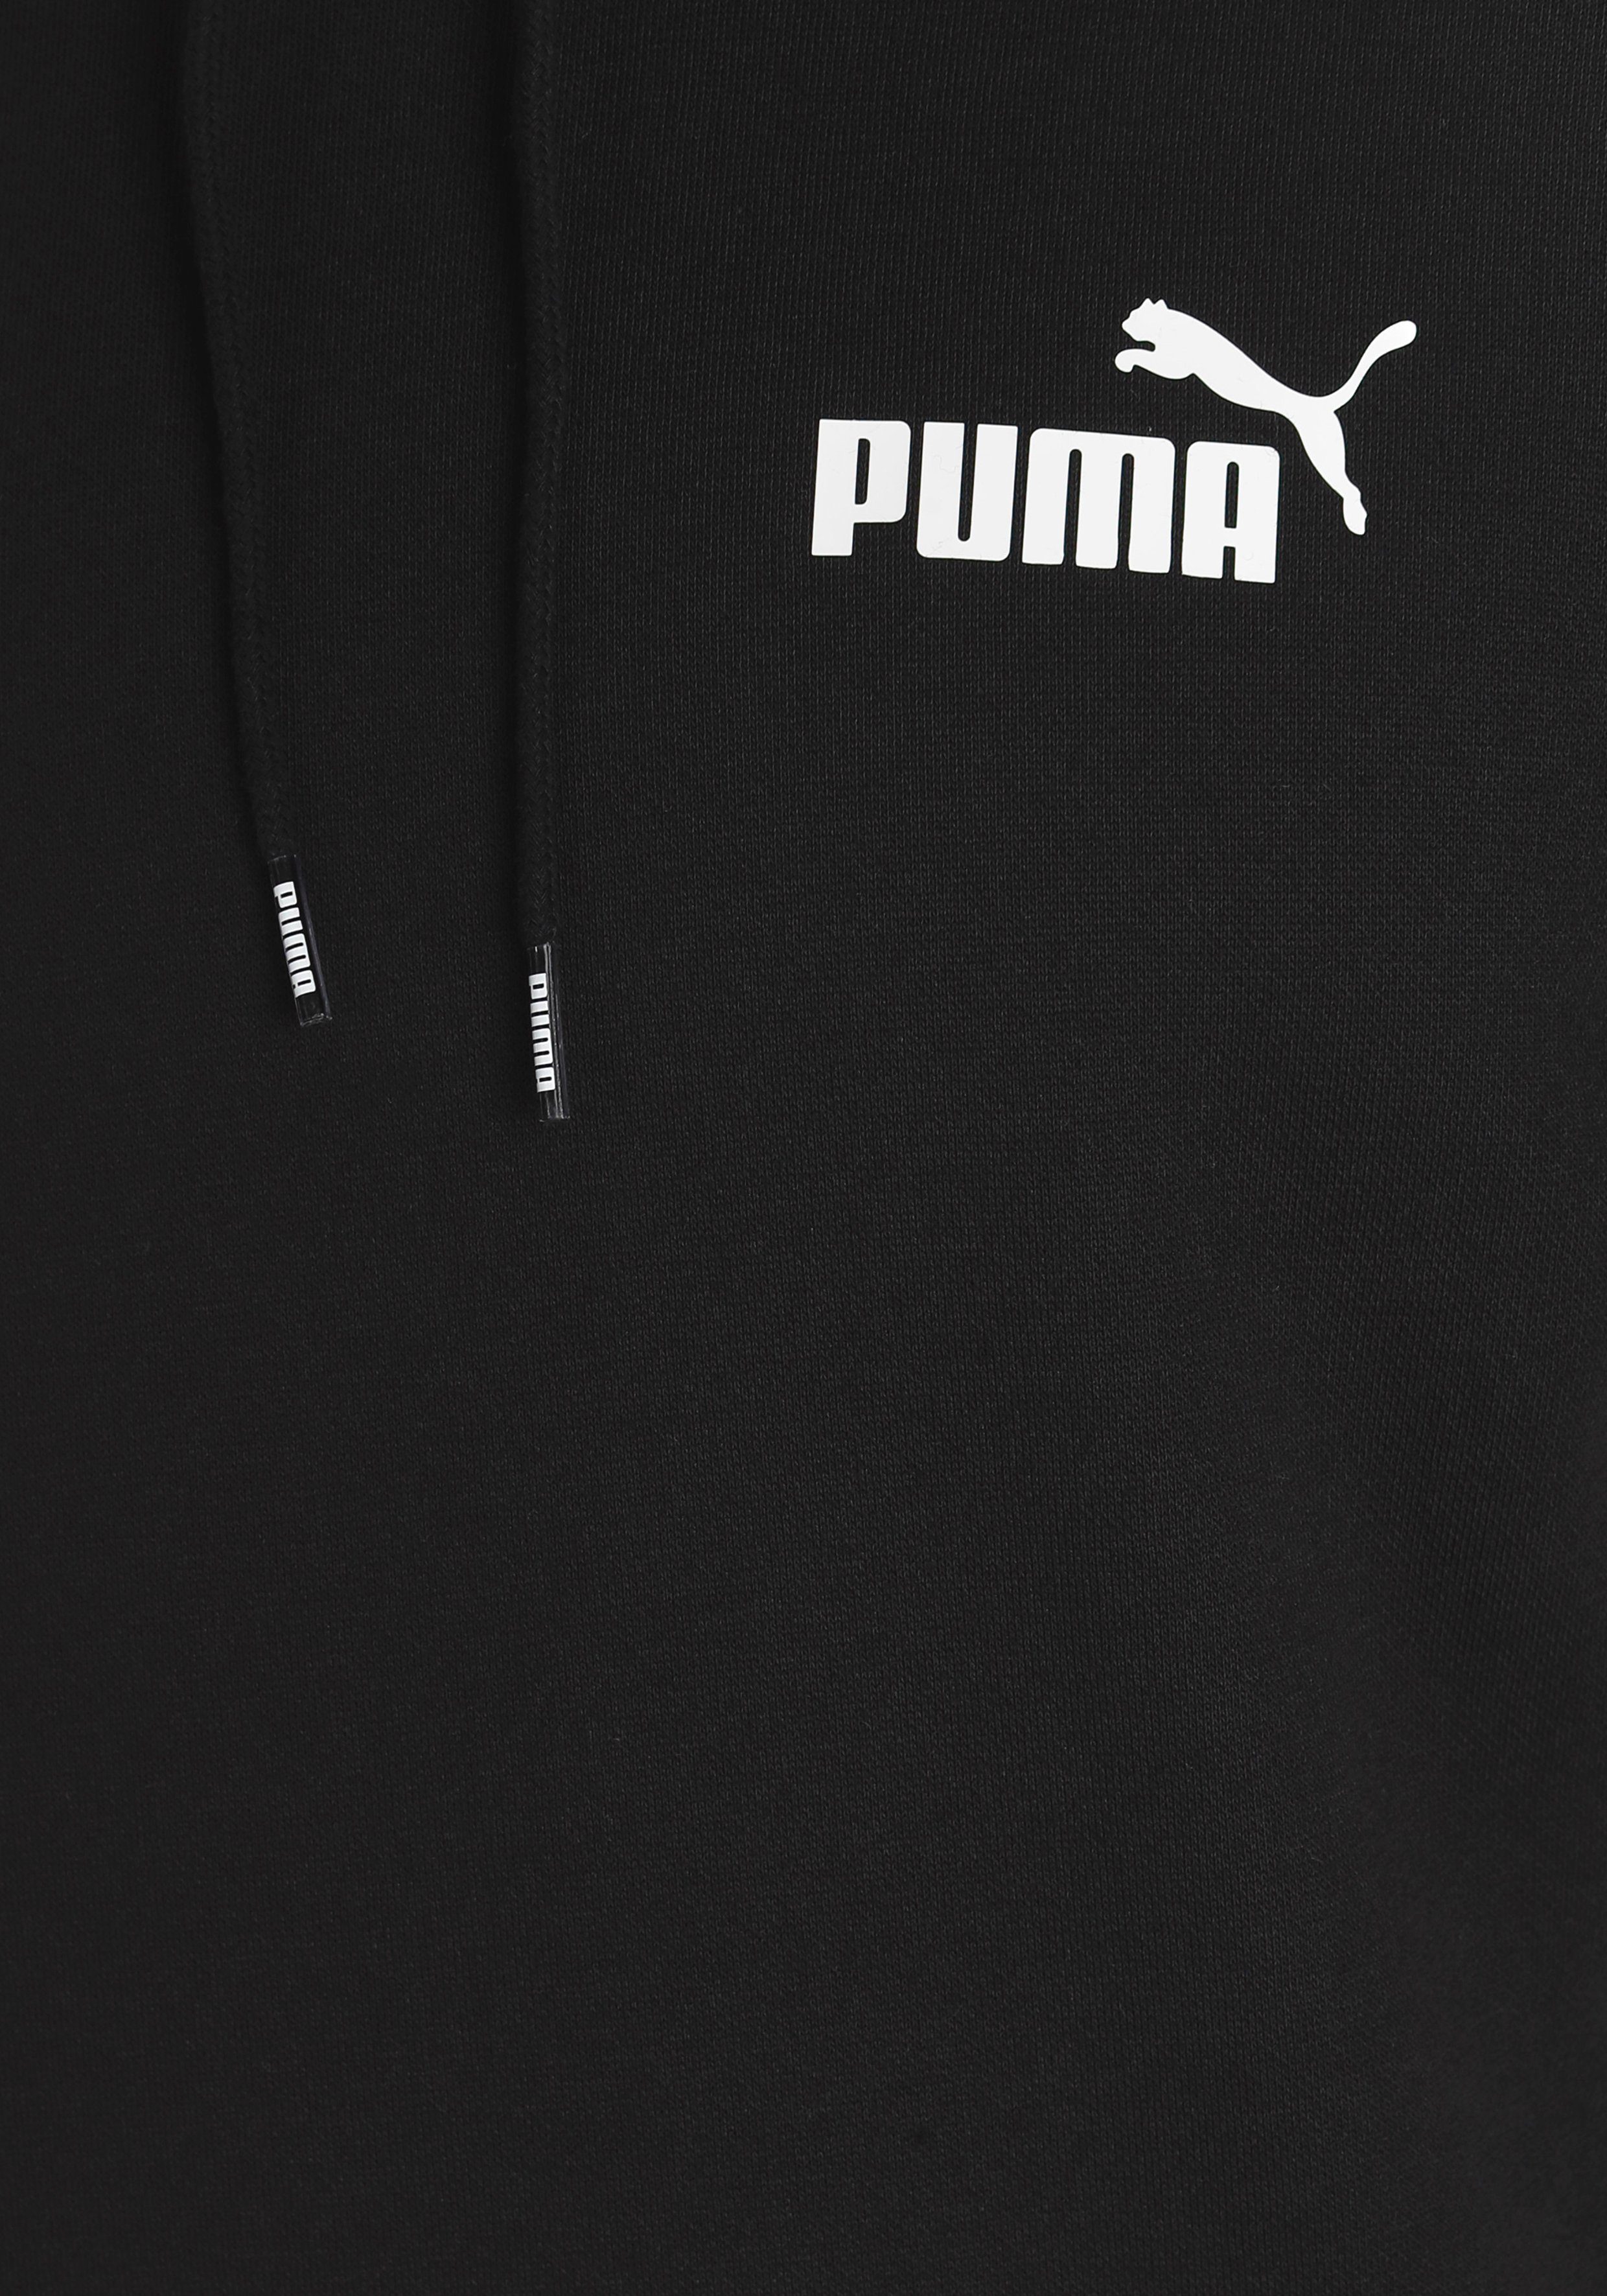 HOODIE Black FL ESS Puma Kapuzensweatshirt SMALL PUMA LOGO